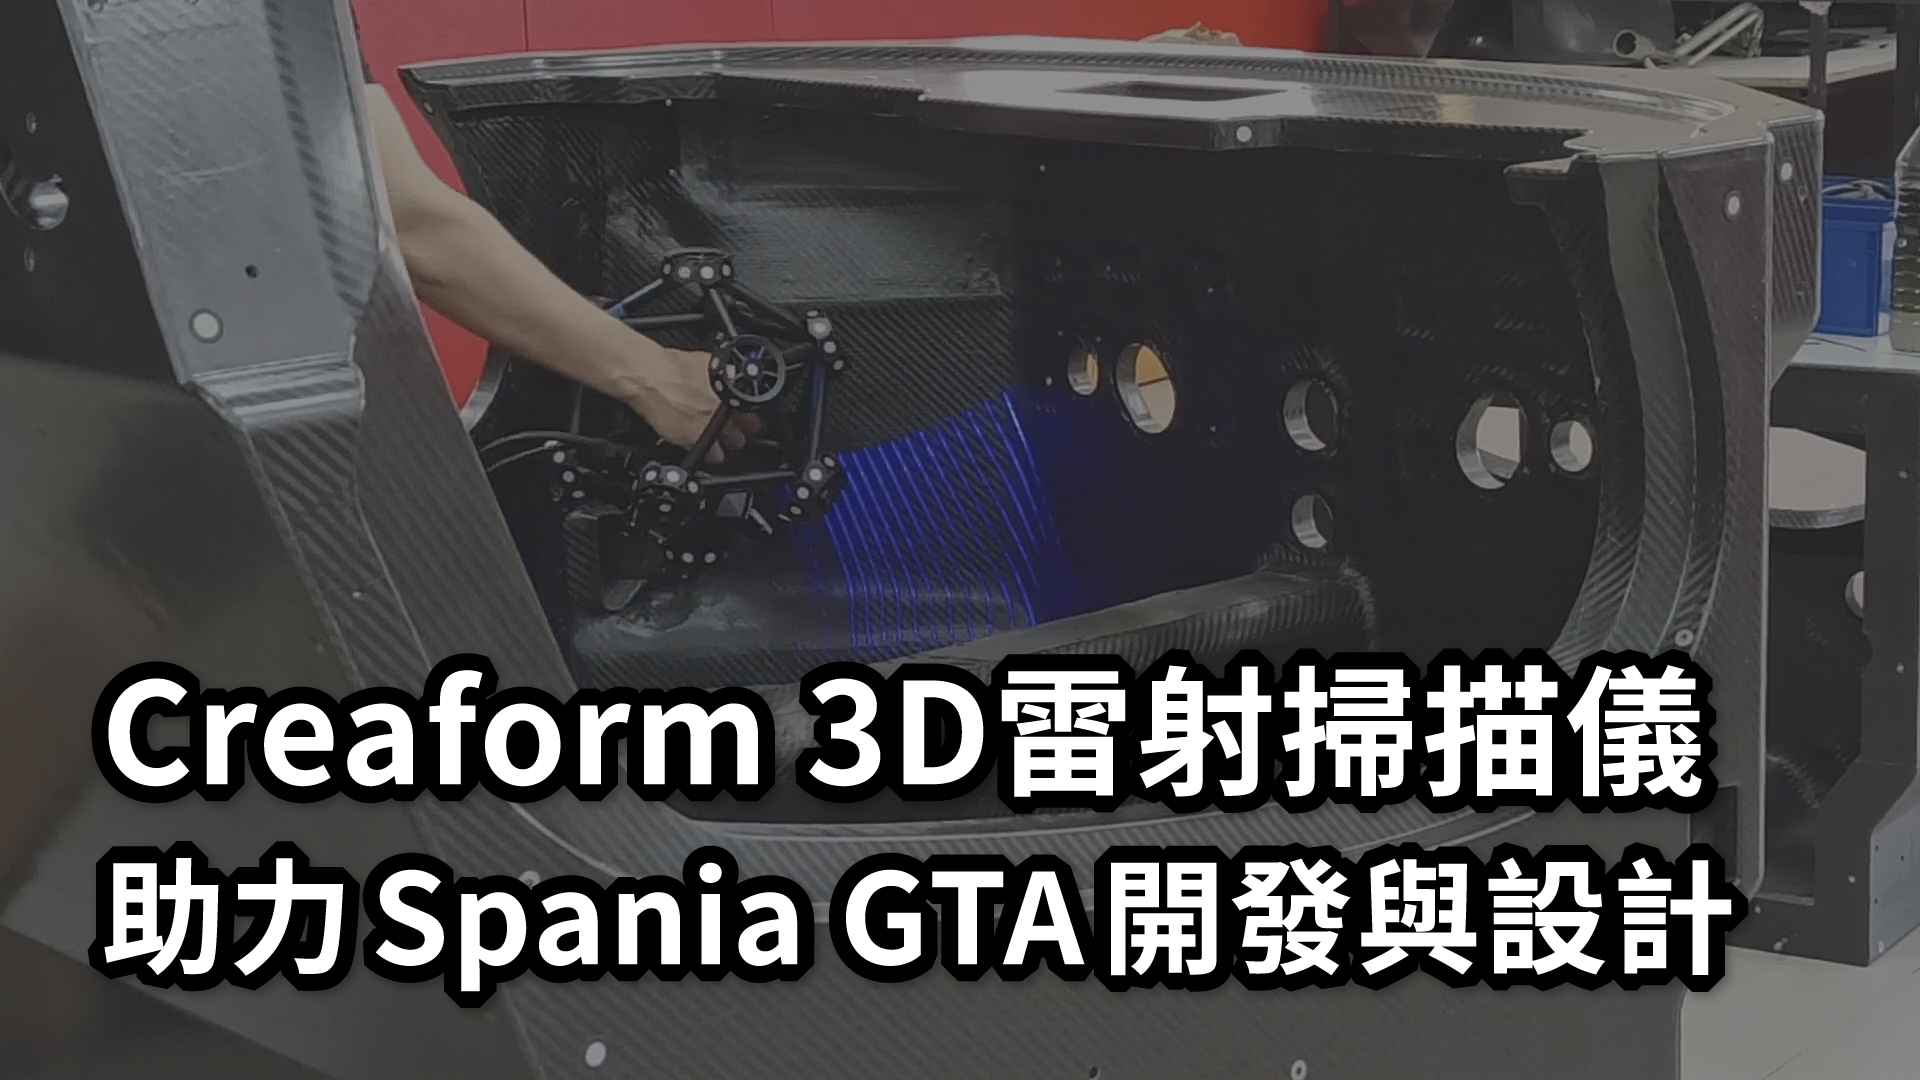 Creaform 3D雷射掃描儀助力Spania GTA開發與設計